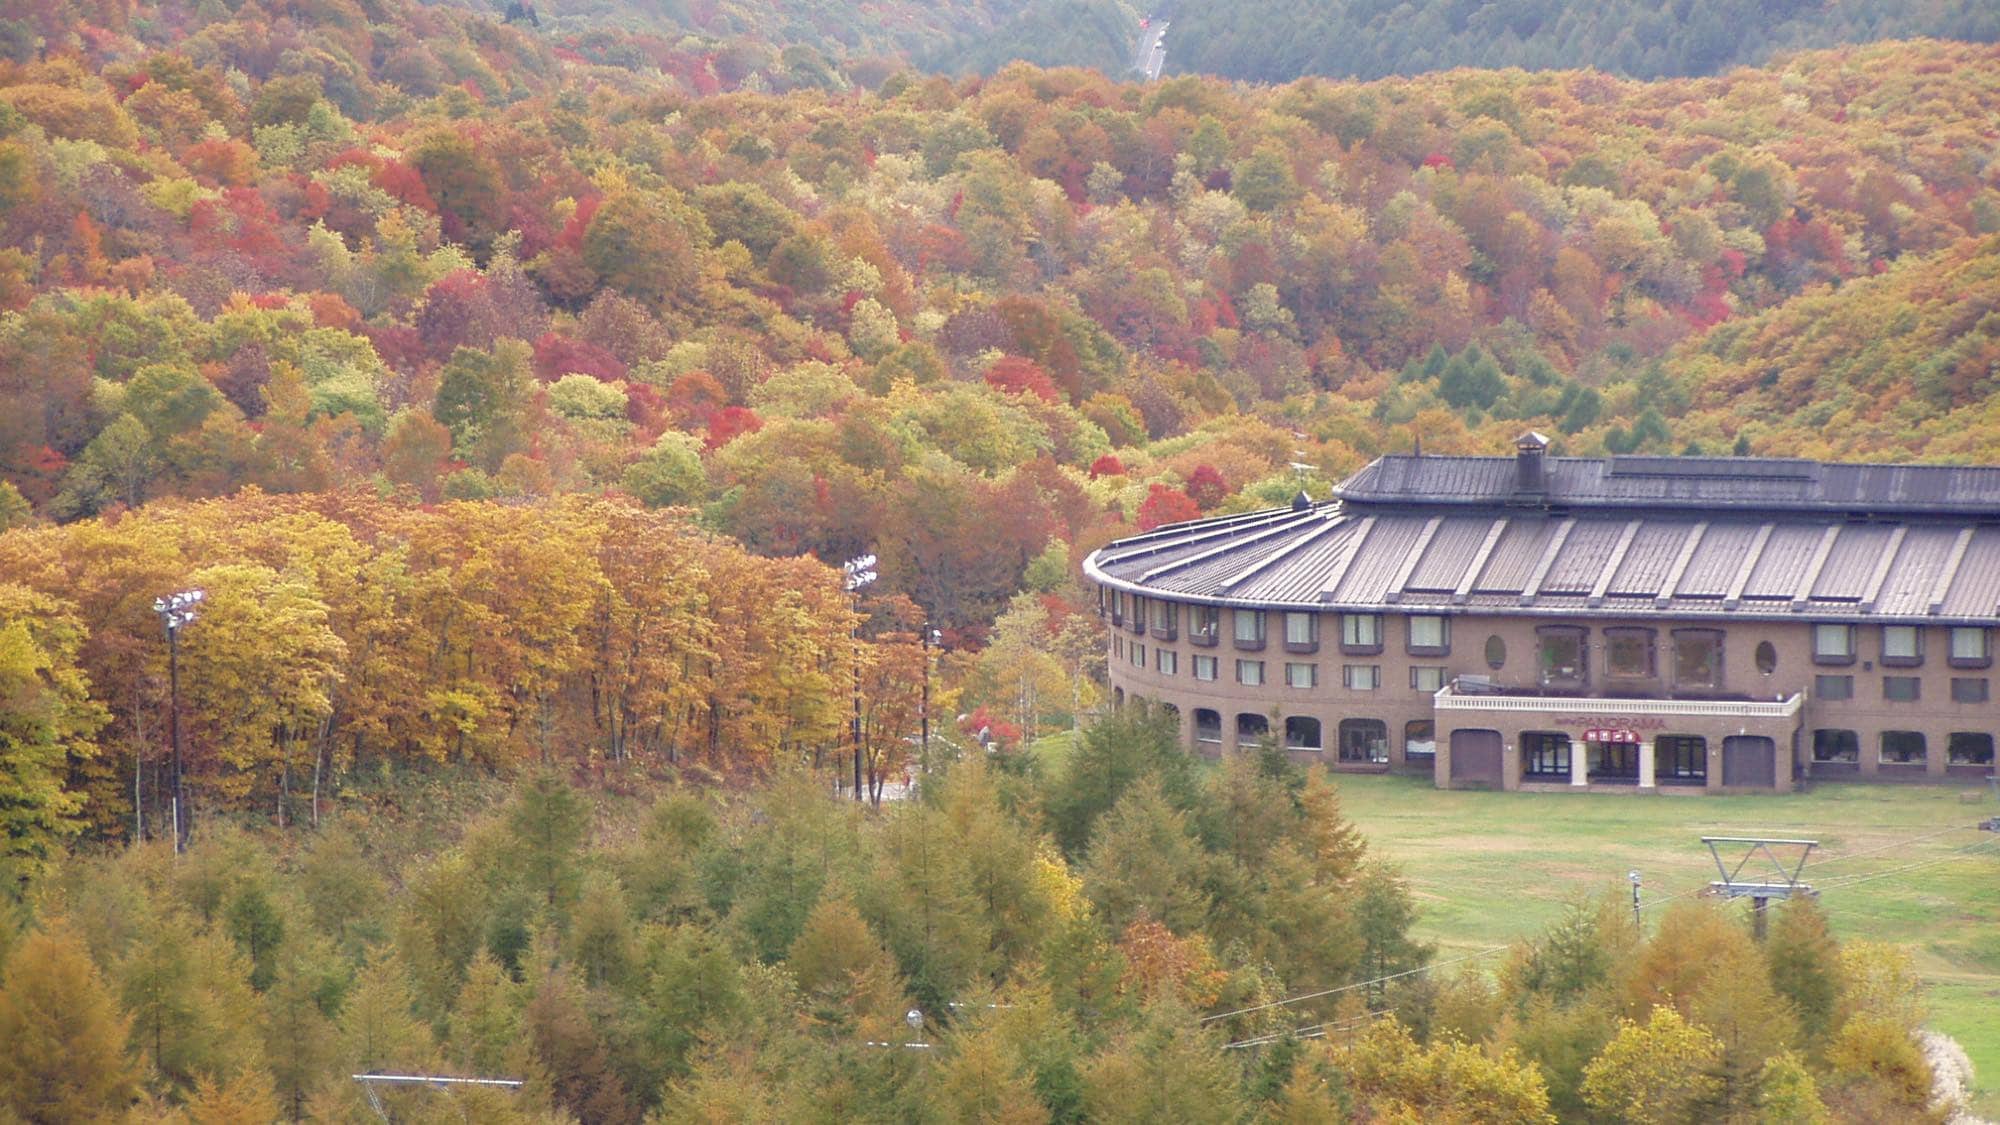 即使在紅葉季節，也可以享受360度色彩繽紛的山脈的夢幻般的氛圍。